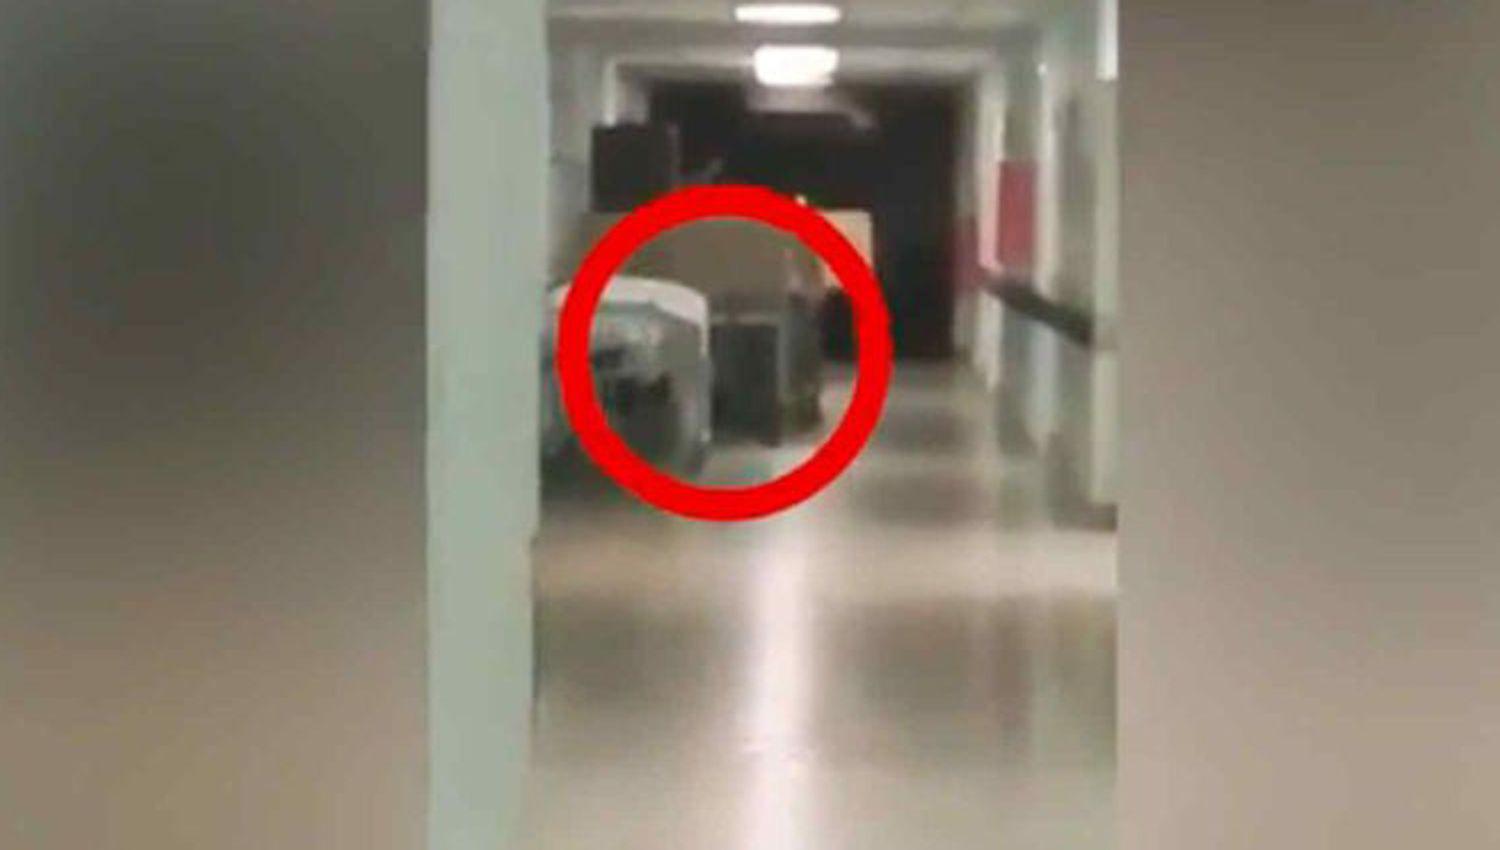 VIDEO- extrantildea aparicioacuten en un hospital generoacute paacutenico en los empleados